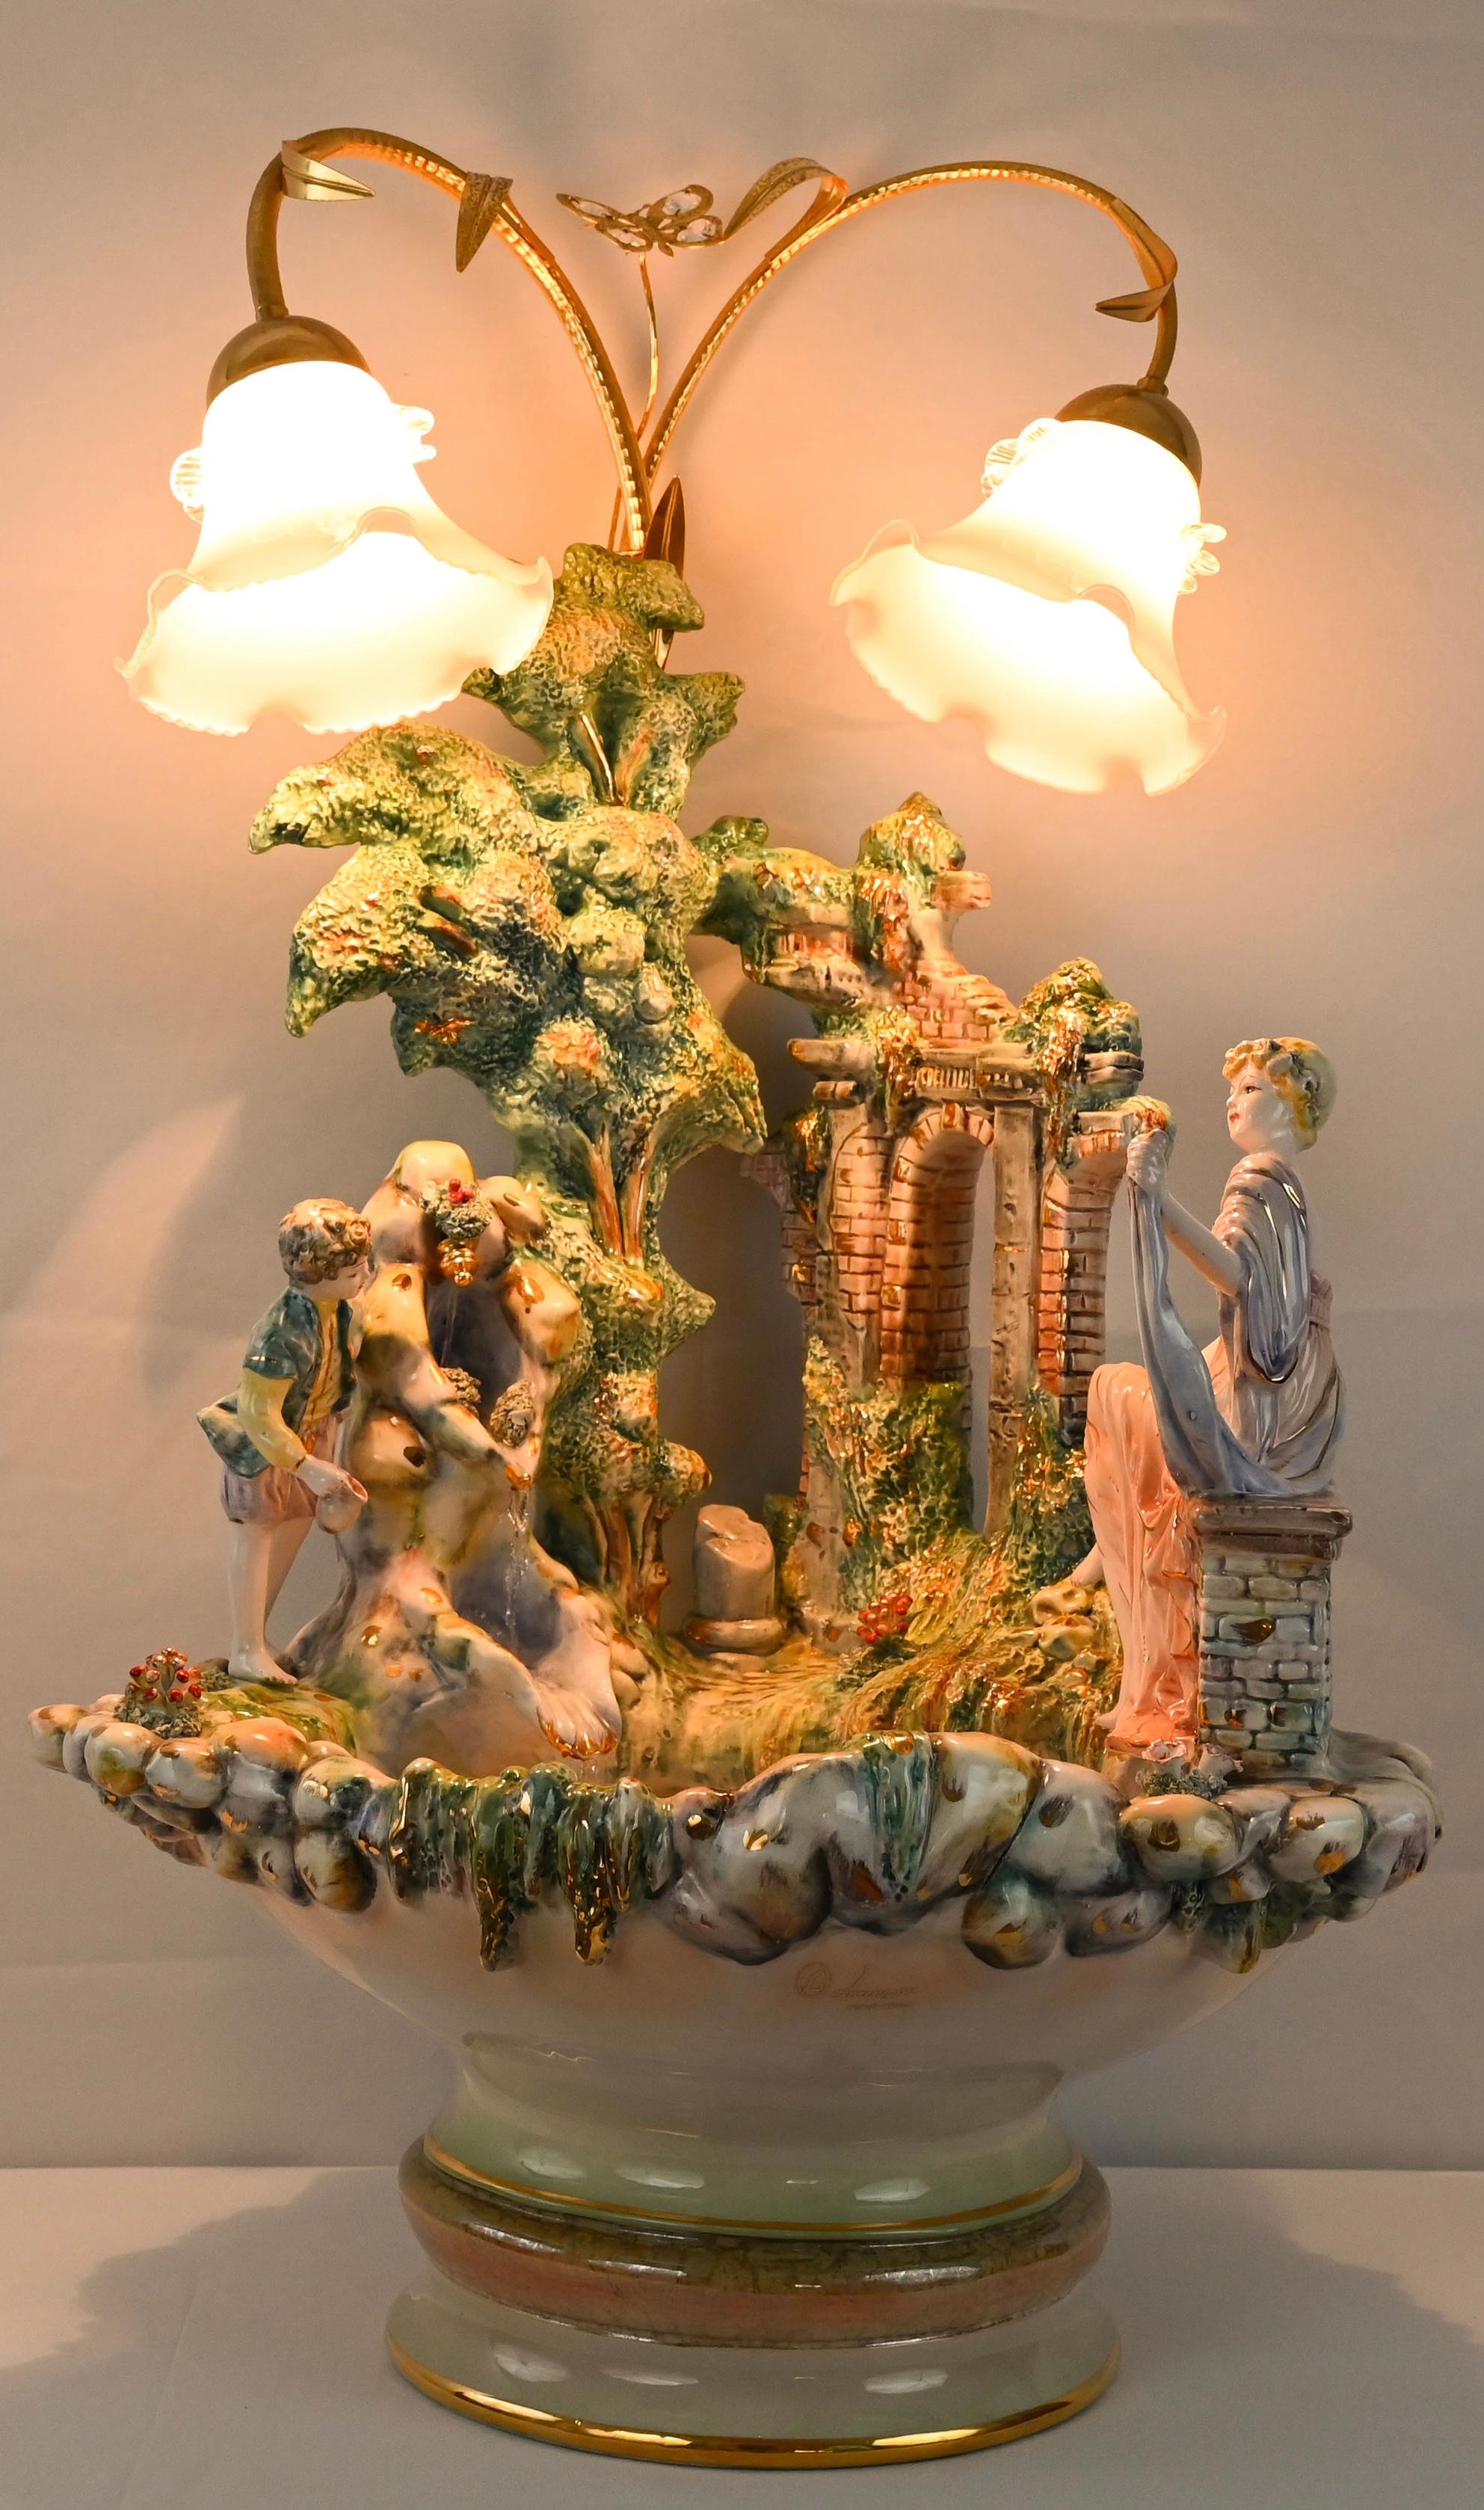 Ein beleuchteter Springbrunnen oder eine Vogeltränke aus italienischem Porzellan von sehr guter Qualität in einer Größe, die perfekt für jeden Innen- oder Außenbereich ist. Das schöne handgefertigte Porzellan wurde von Gianni Lorenzon entworfen.